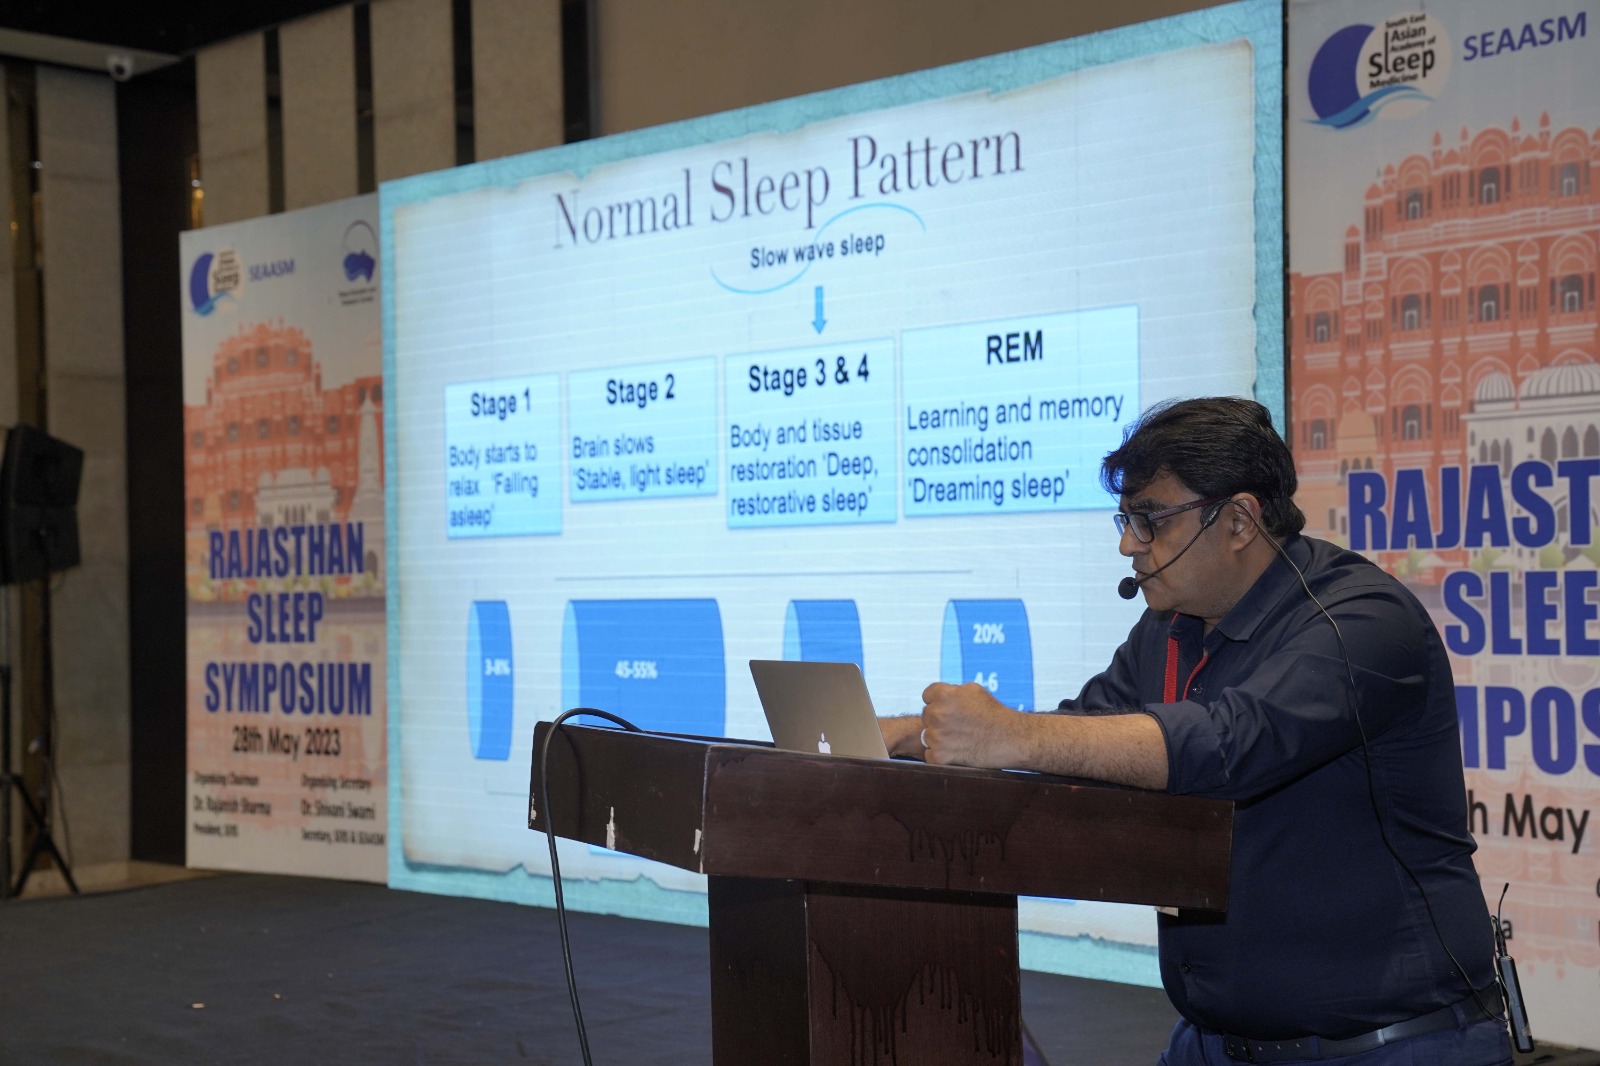 Rajasthan Sleep Symposium 2023